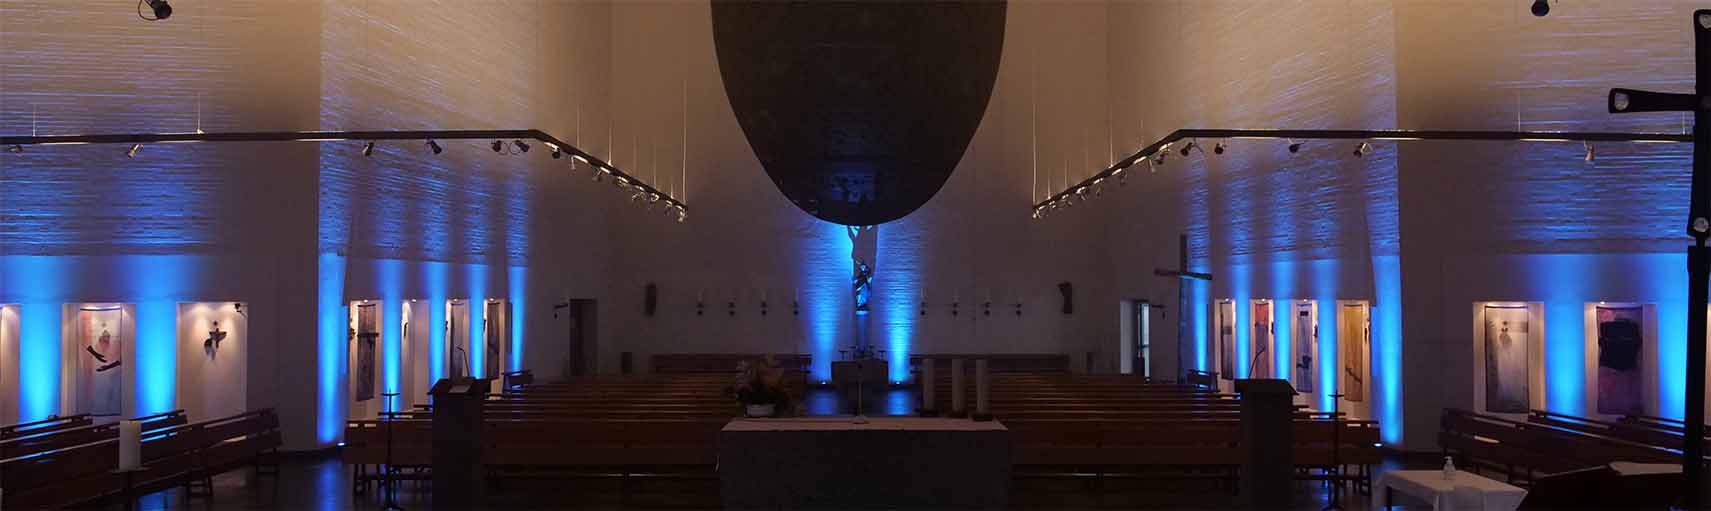 Beleuchtung in einer Kirche